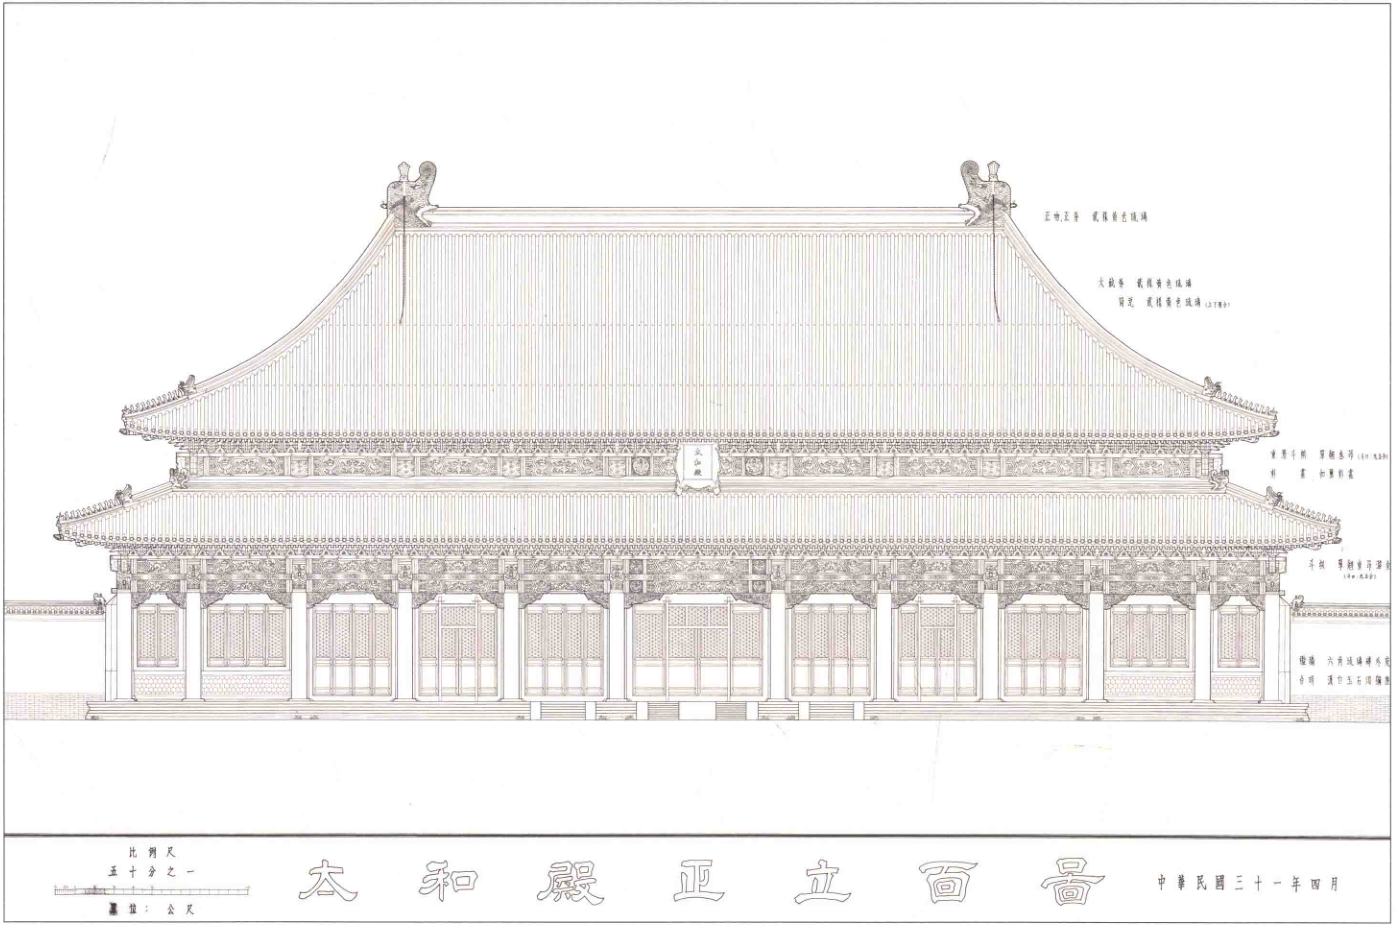 故宫中等级最高的宫殿